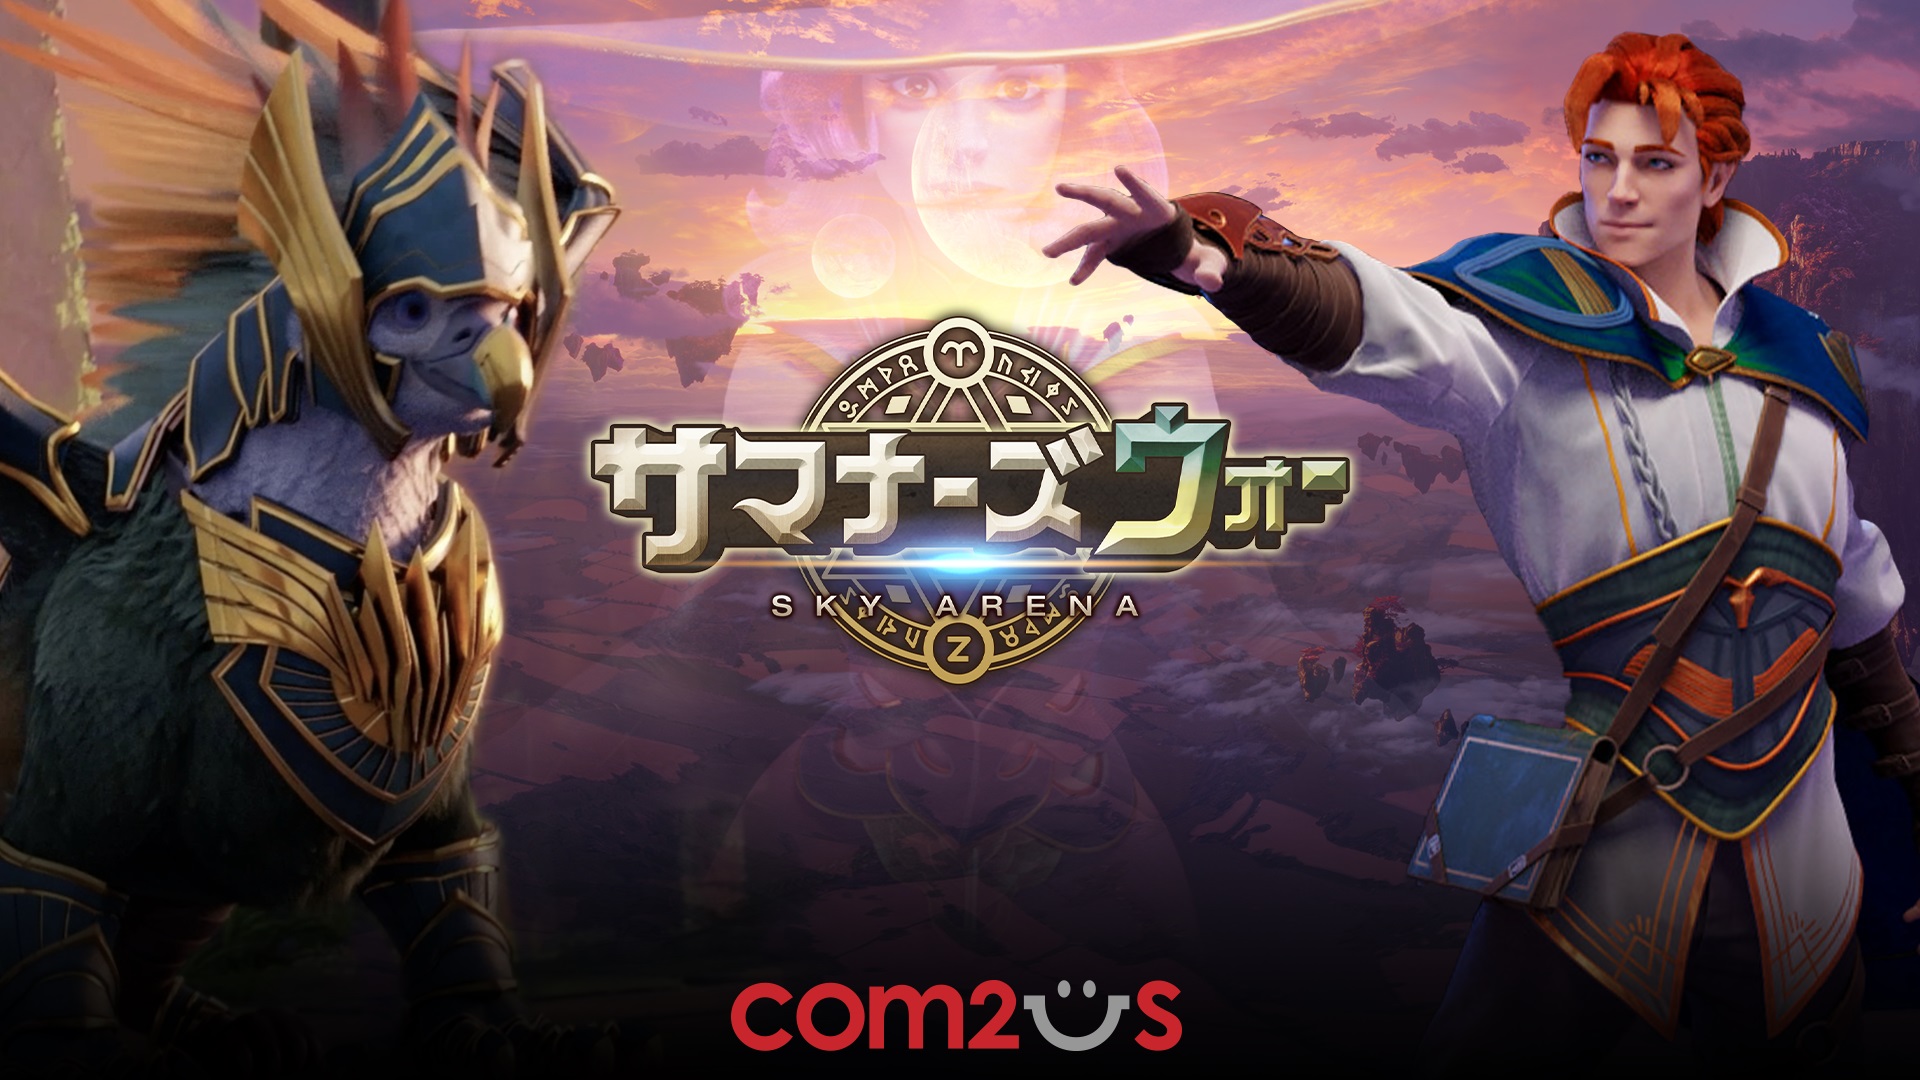 サマナーズウォー Sky Arena 1億dl突破記念短編アニメ公開 アニメーションに関連したゲーム内イベントも開催中 Gamevil Com2us Japanのプレスリリース